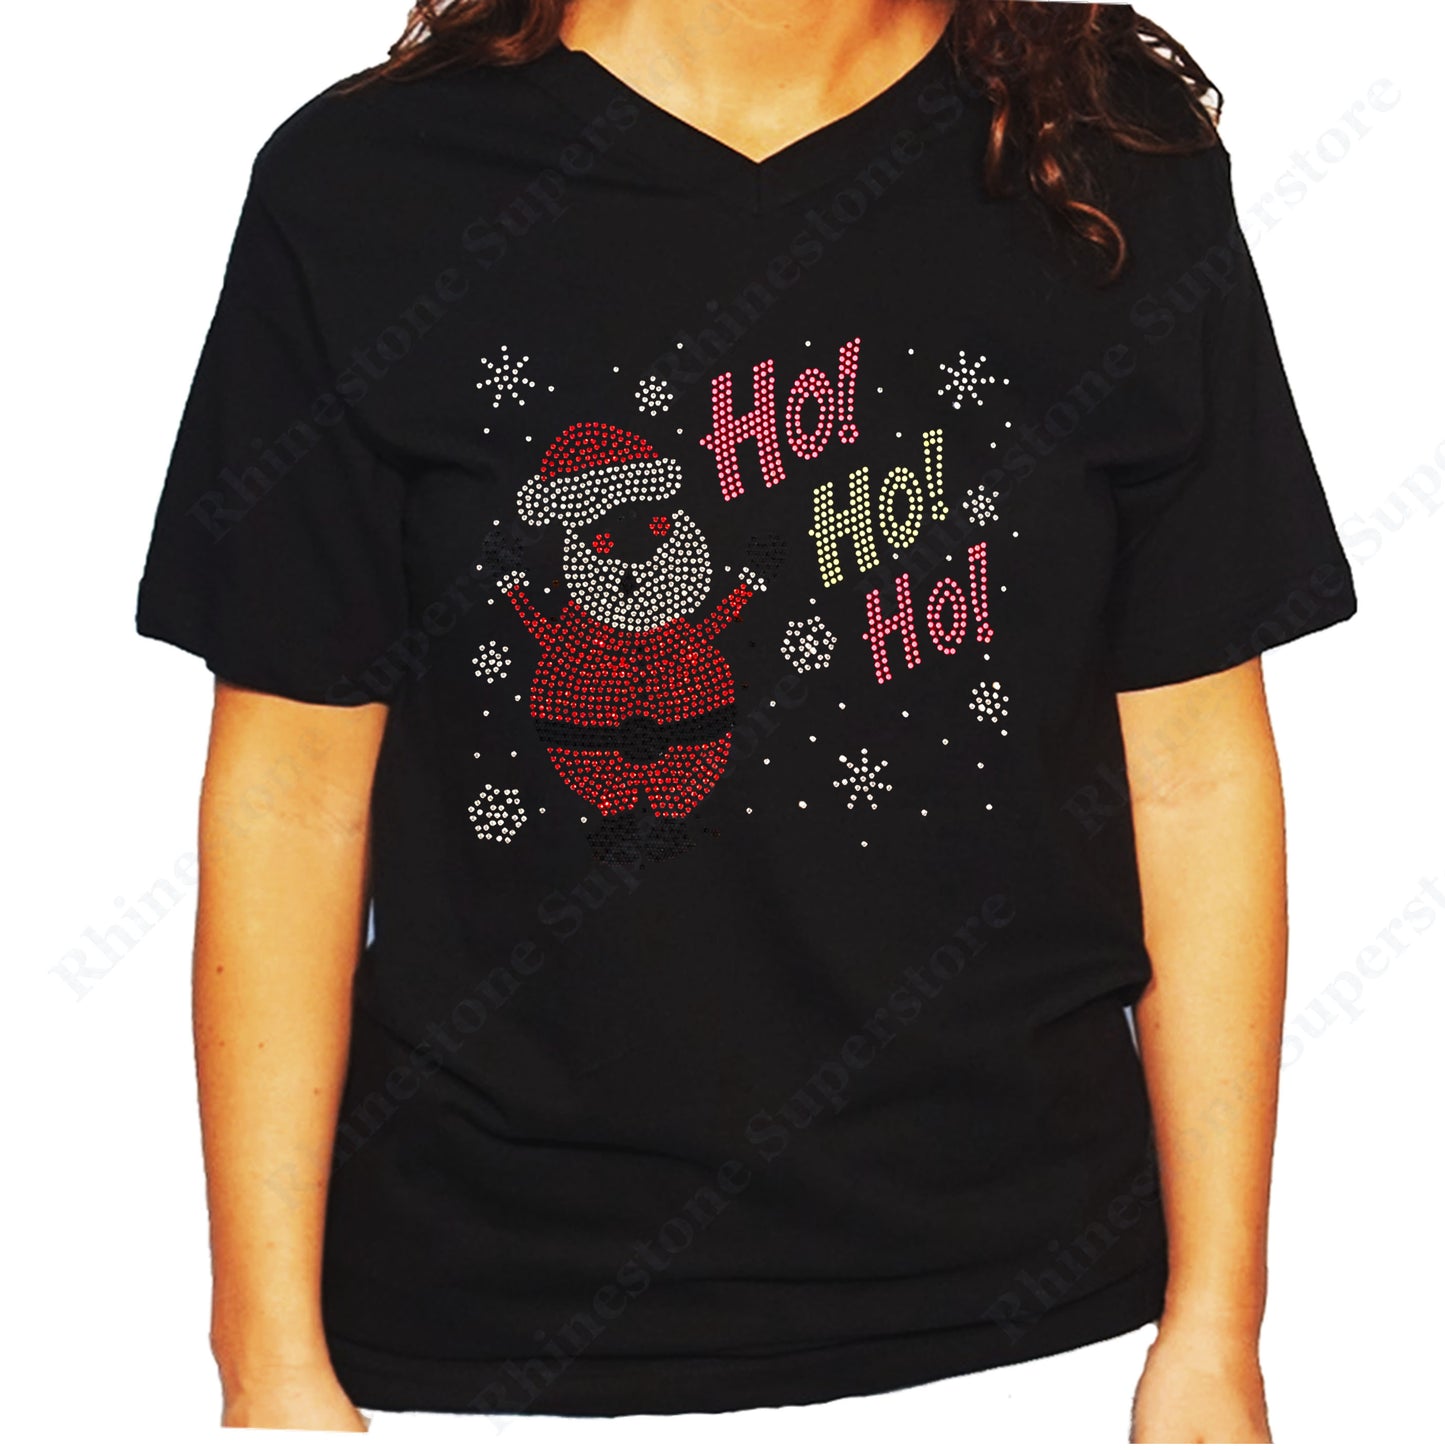 Women's / Unisex T-Shirt with Santa with Ho Ho Ho in Rhinestones